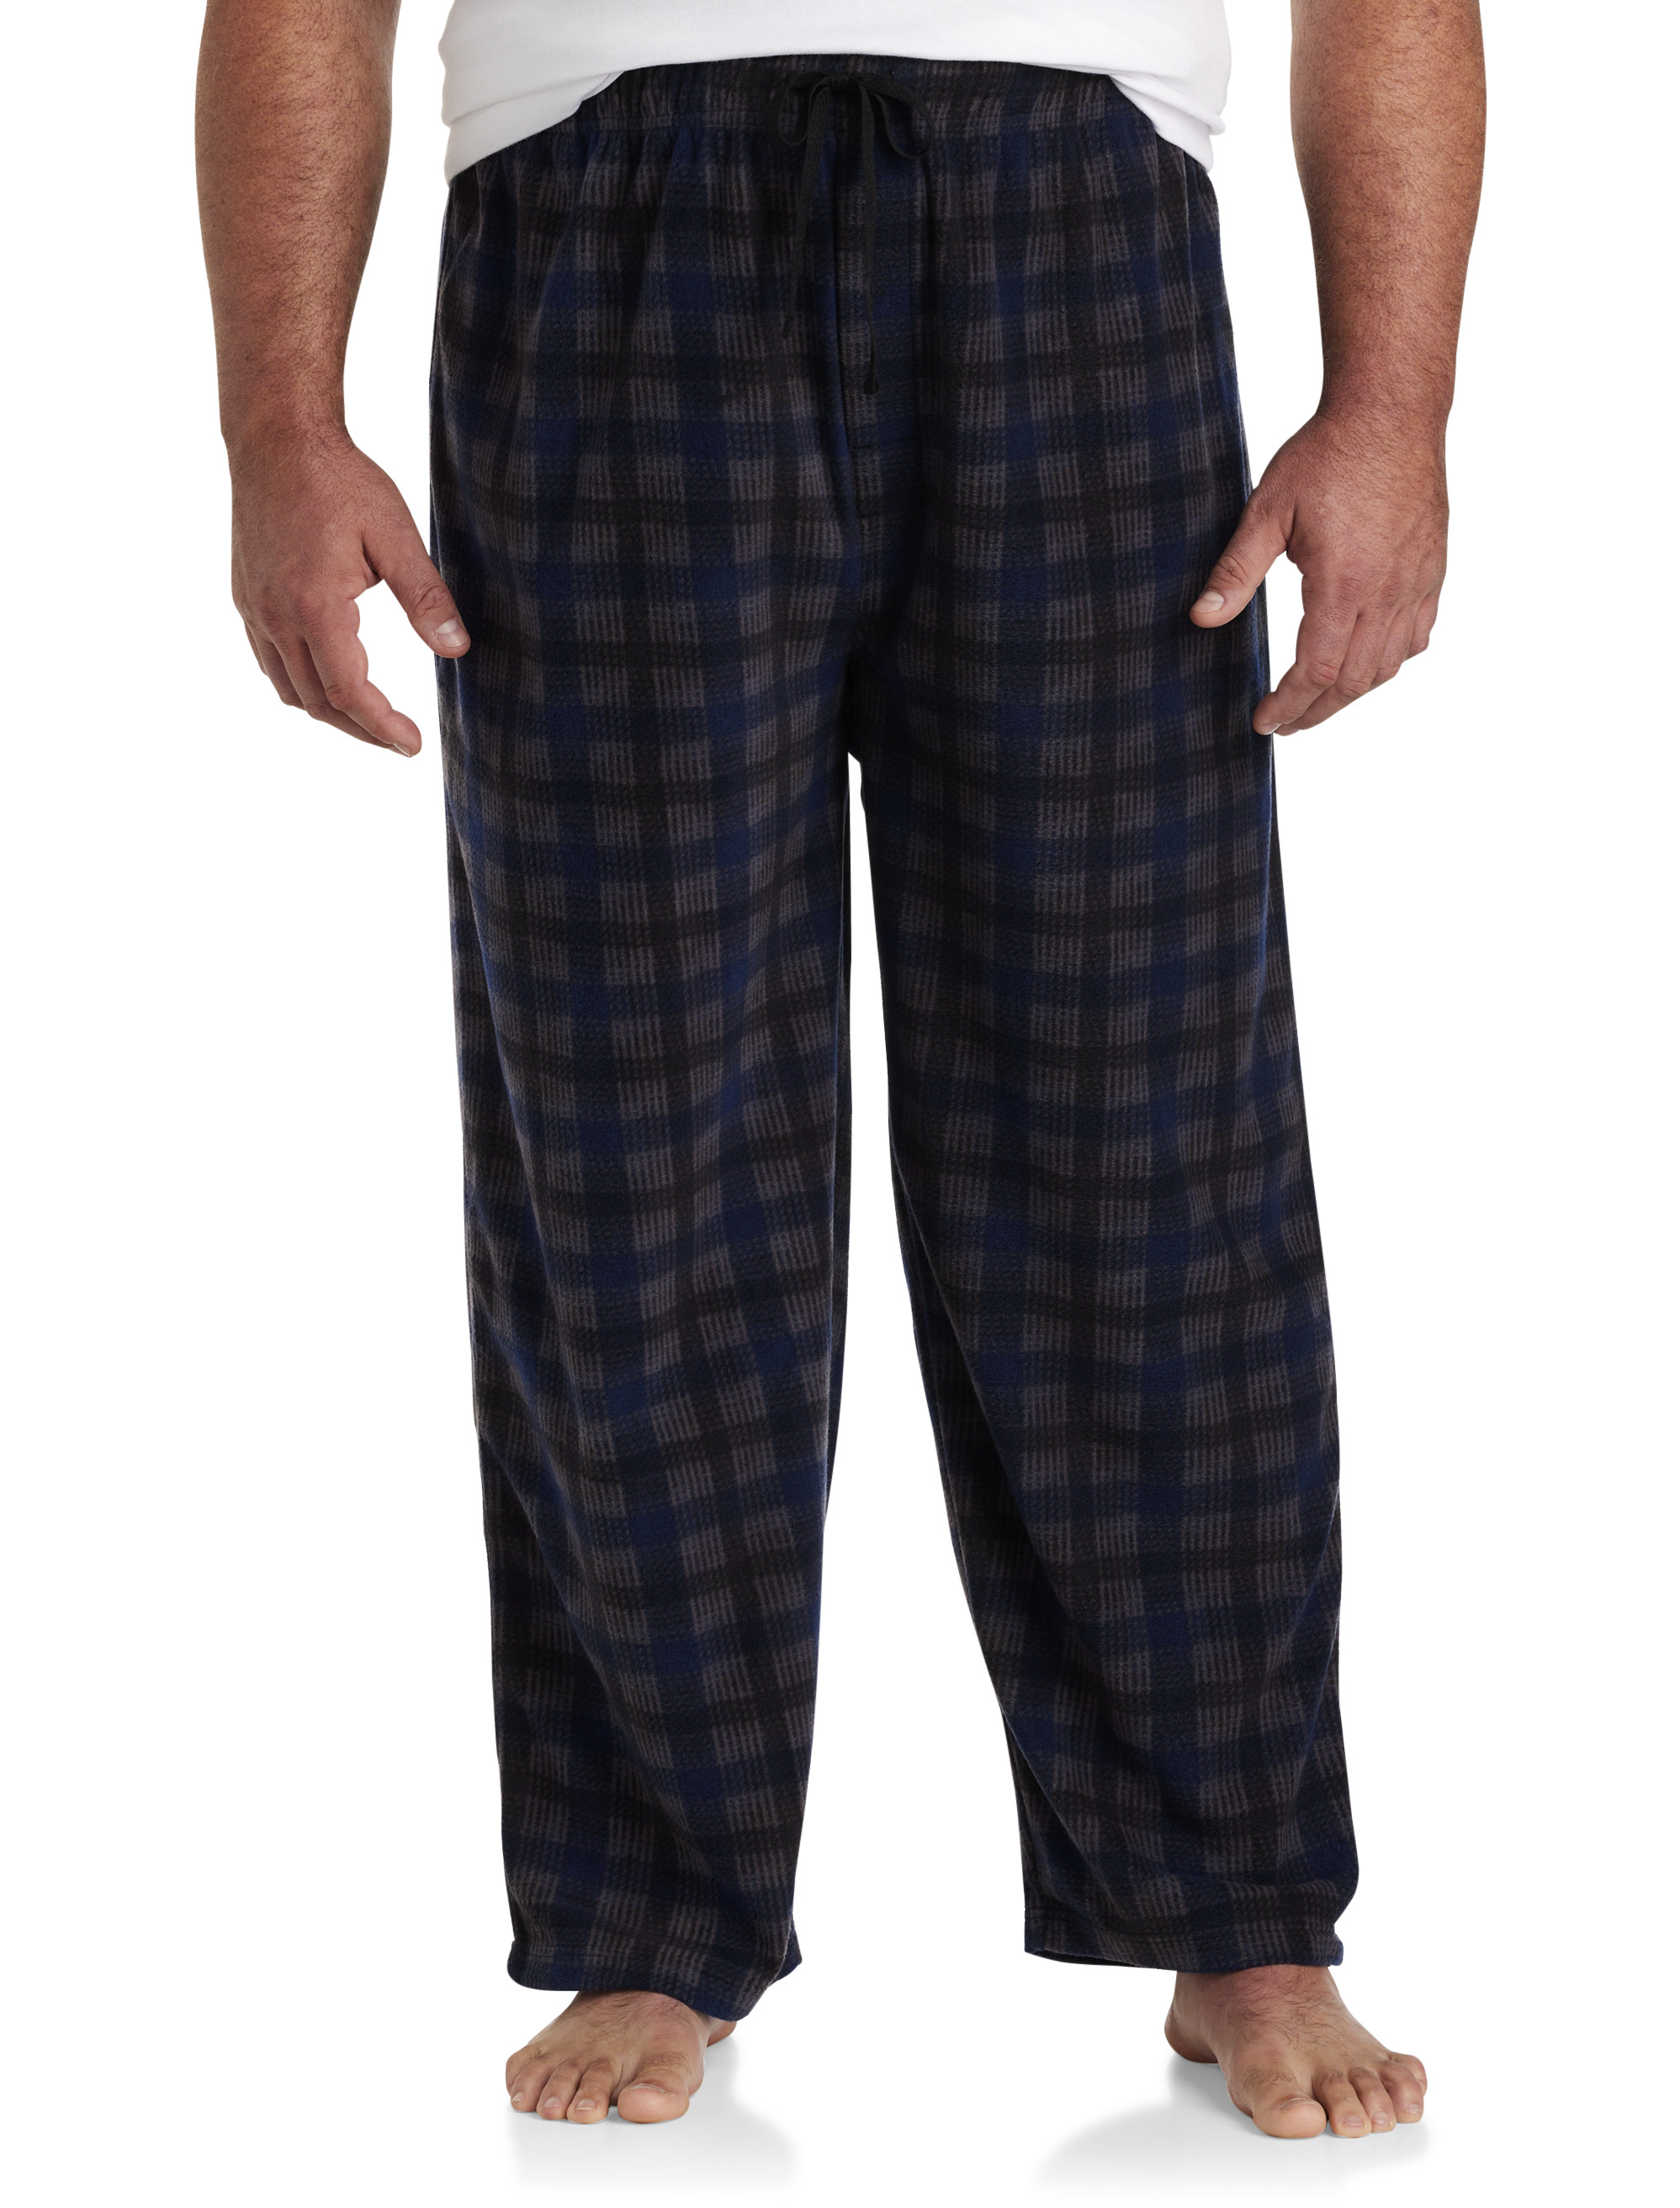 MAJESTIC Navy Crimson Flannel Pajama Set